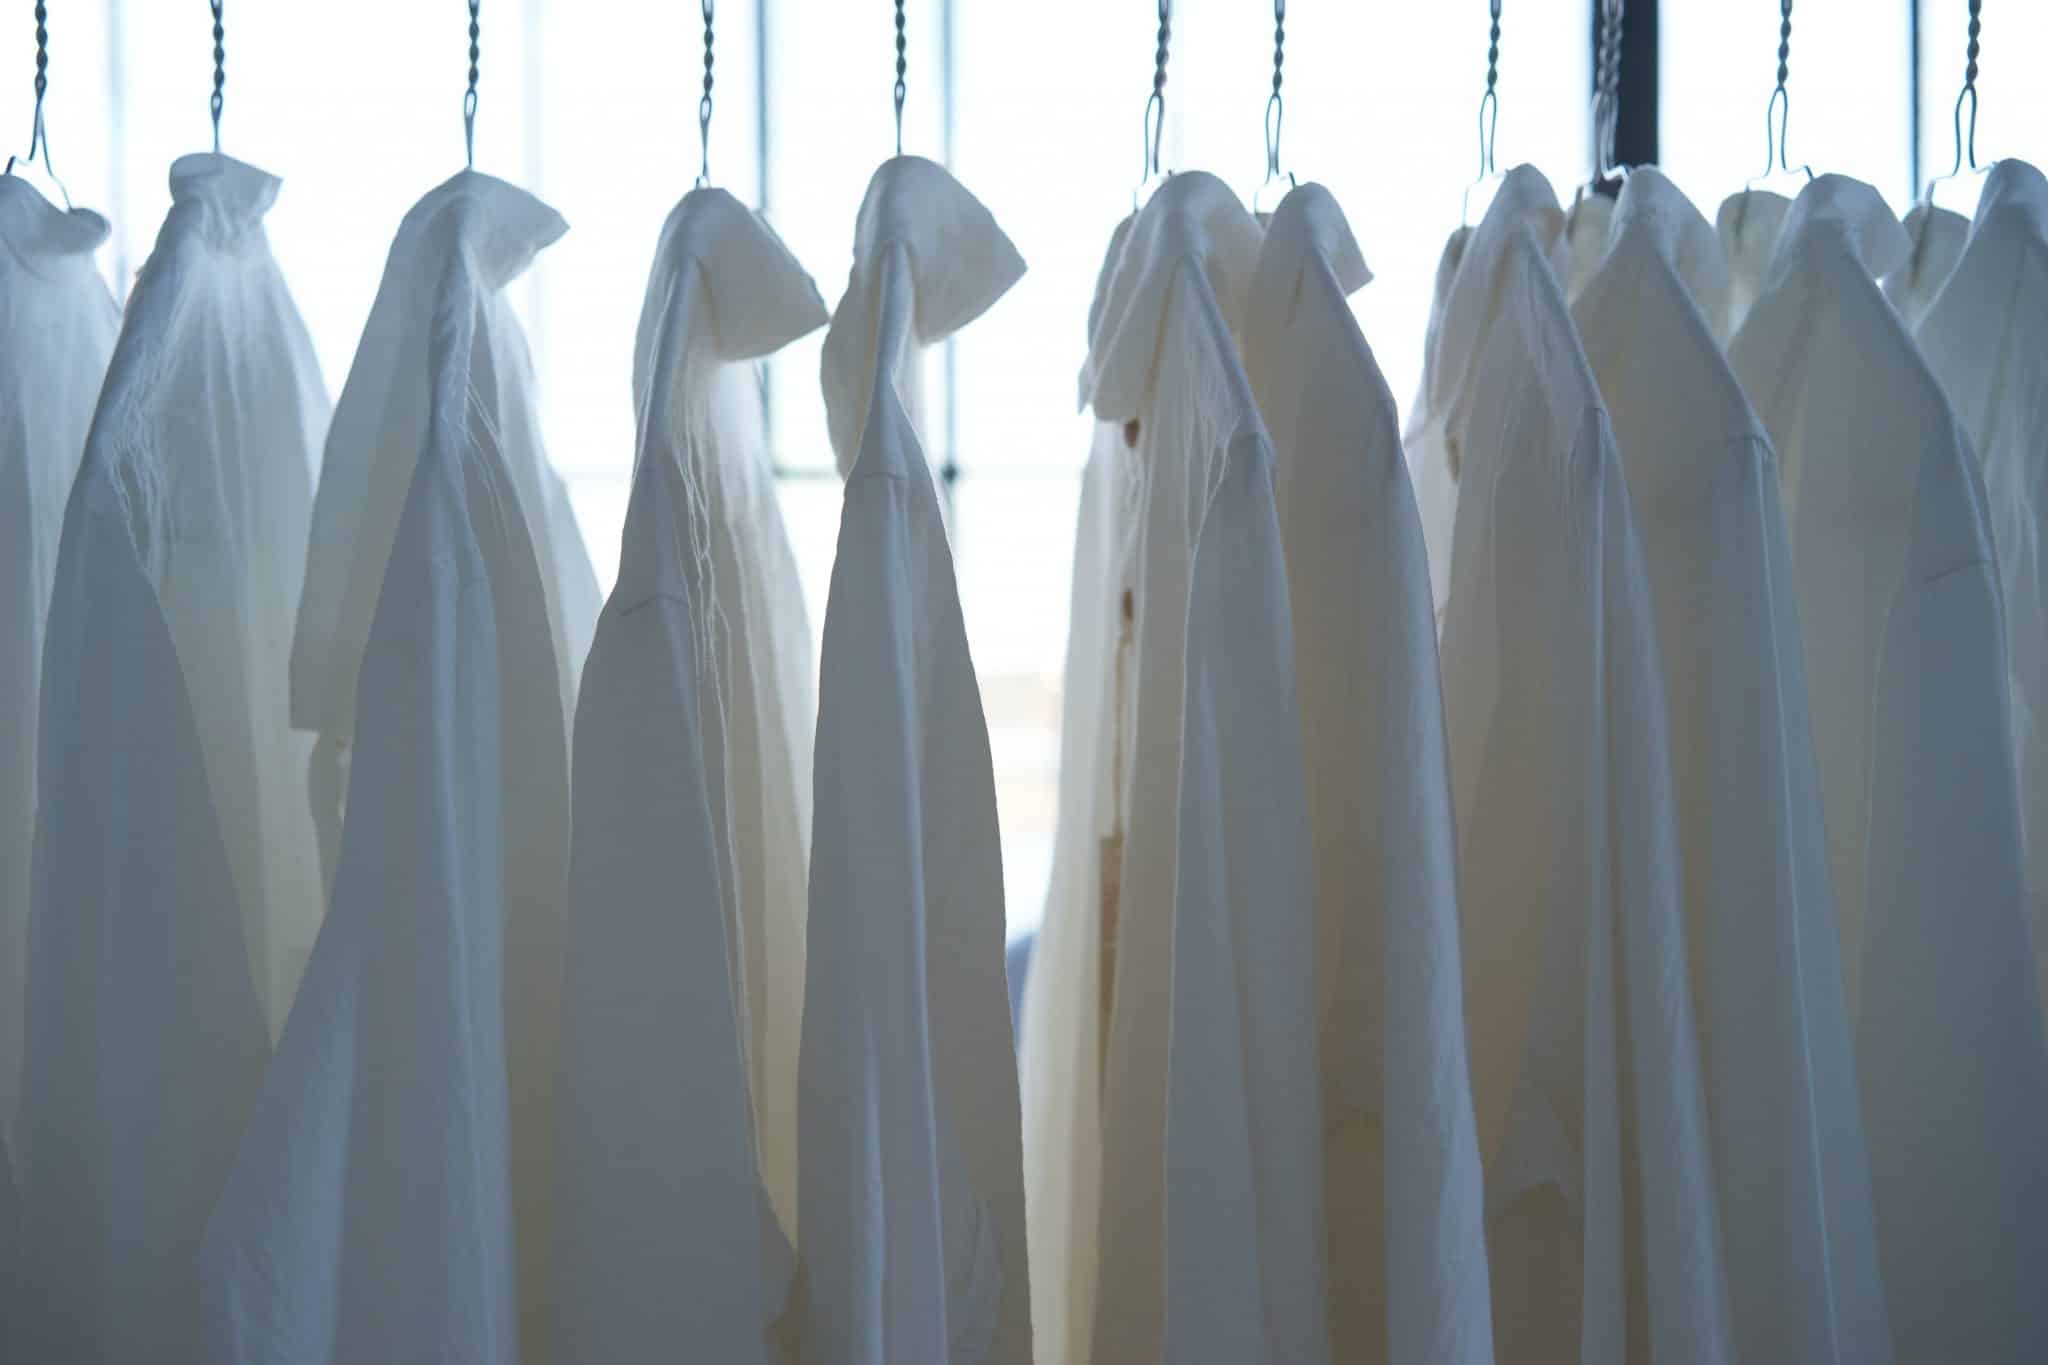 Des chemises blanches sont accrochées à des cintres